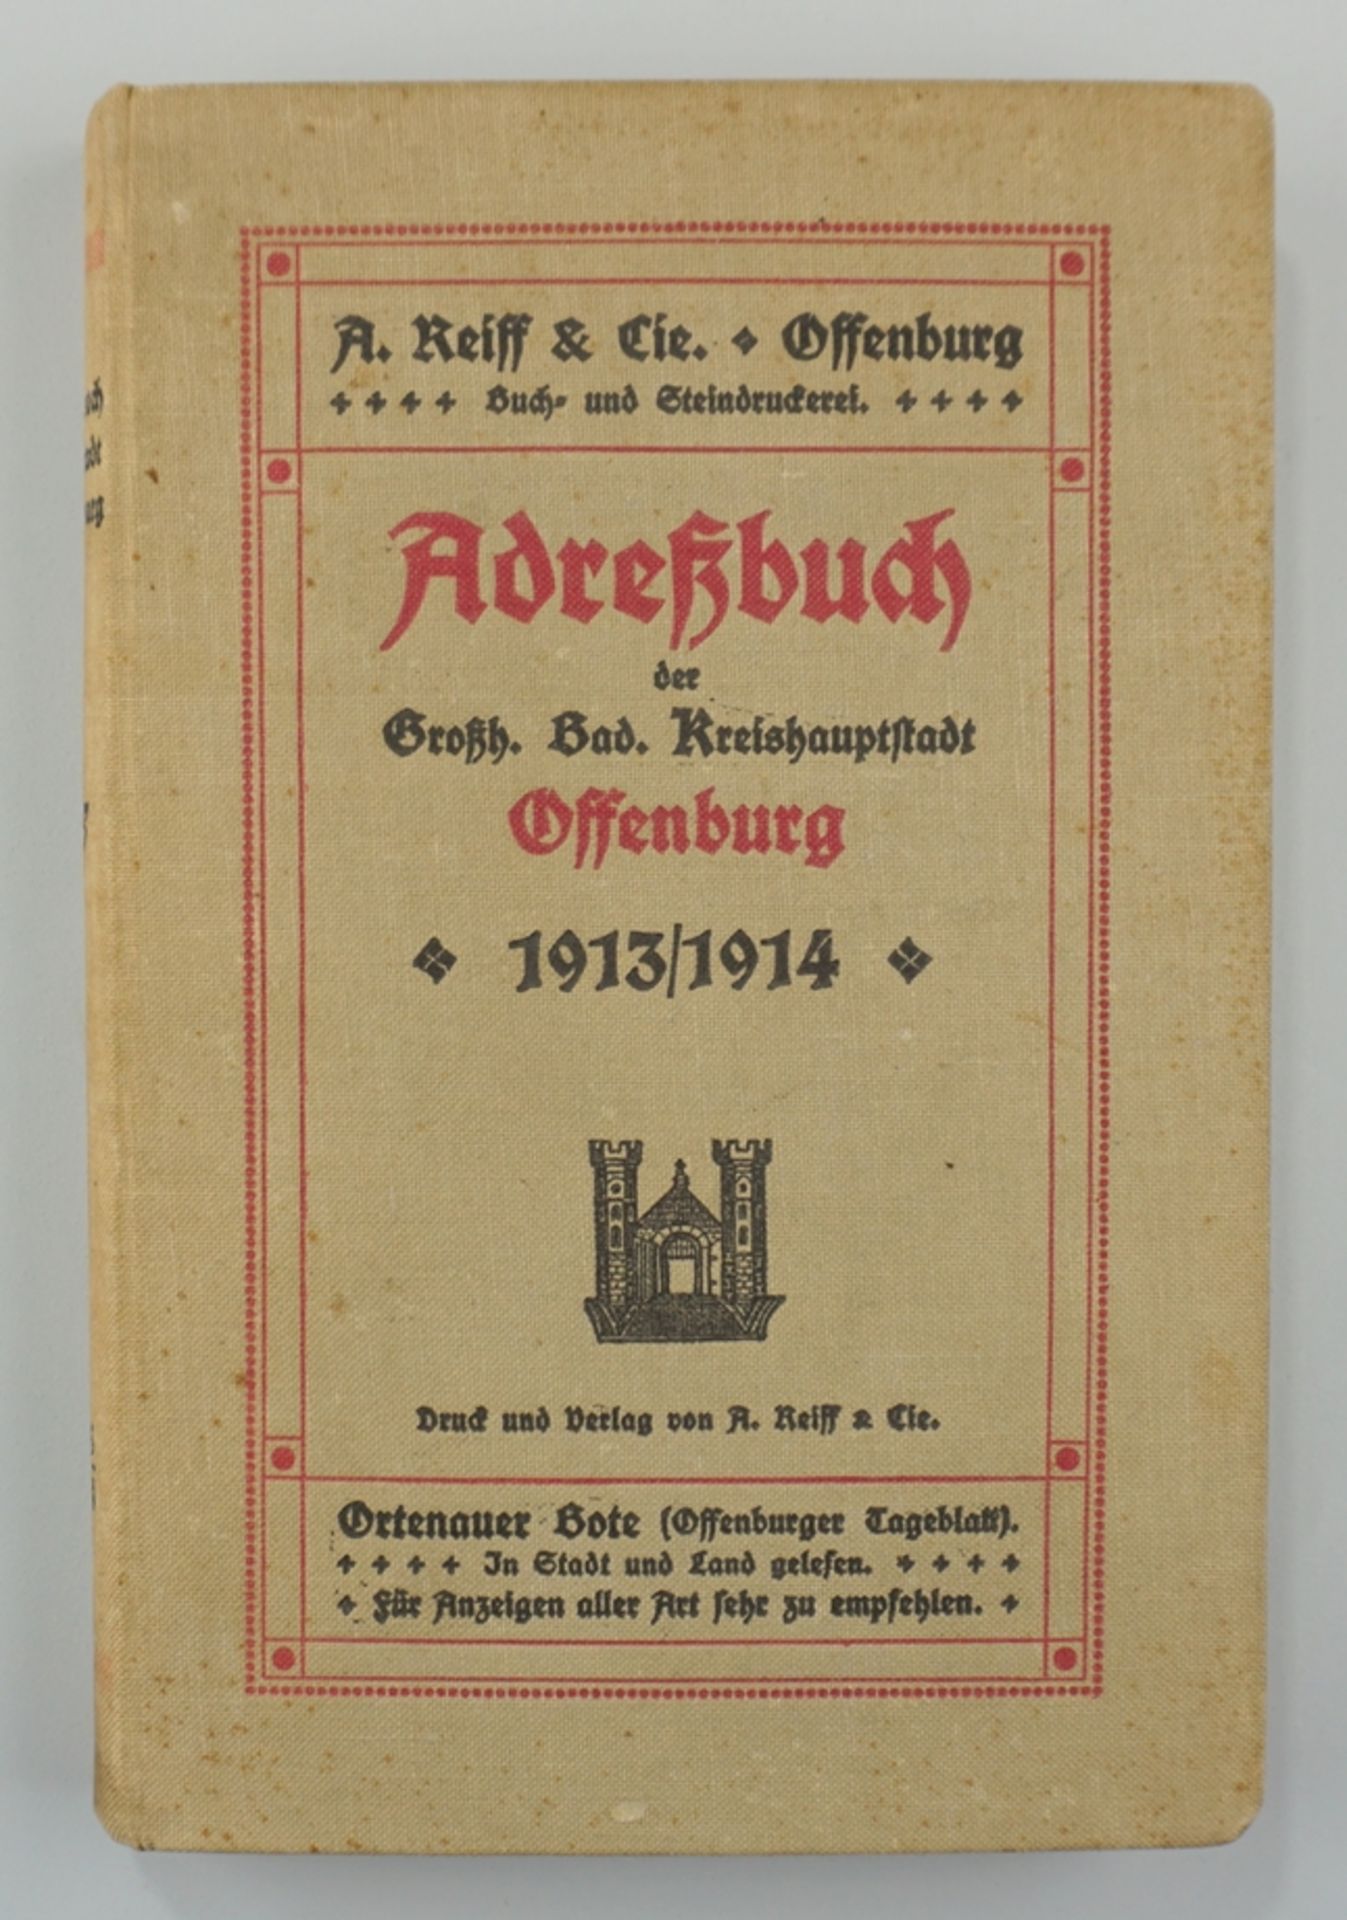 Adreßbuch der Großh. Bad. Kreishauptstadt Offenburg, 1913/1914